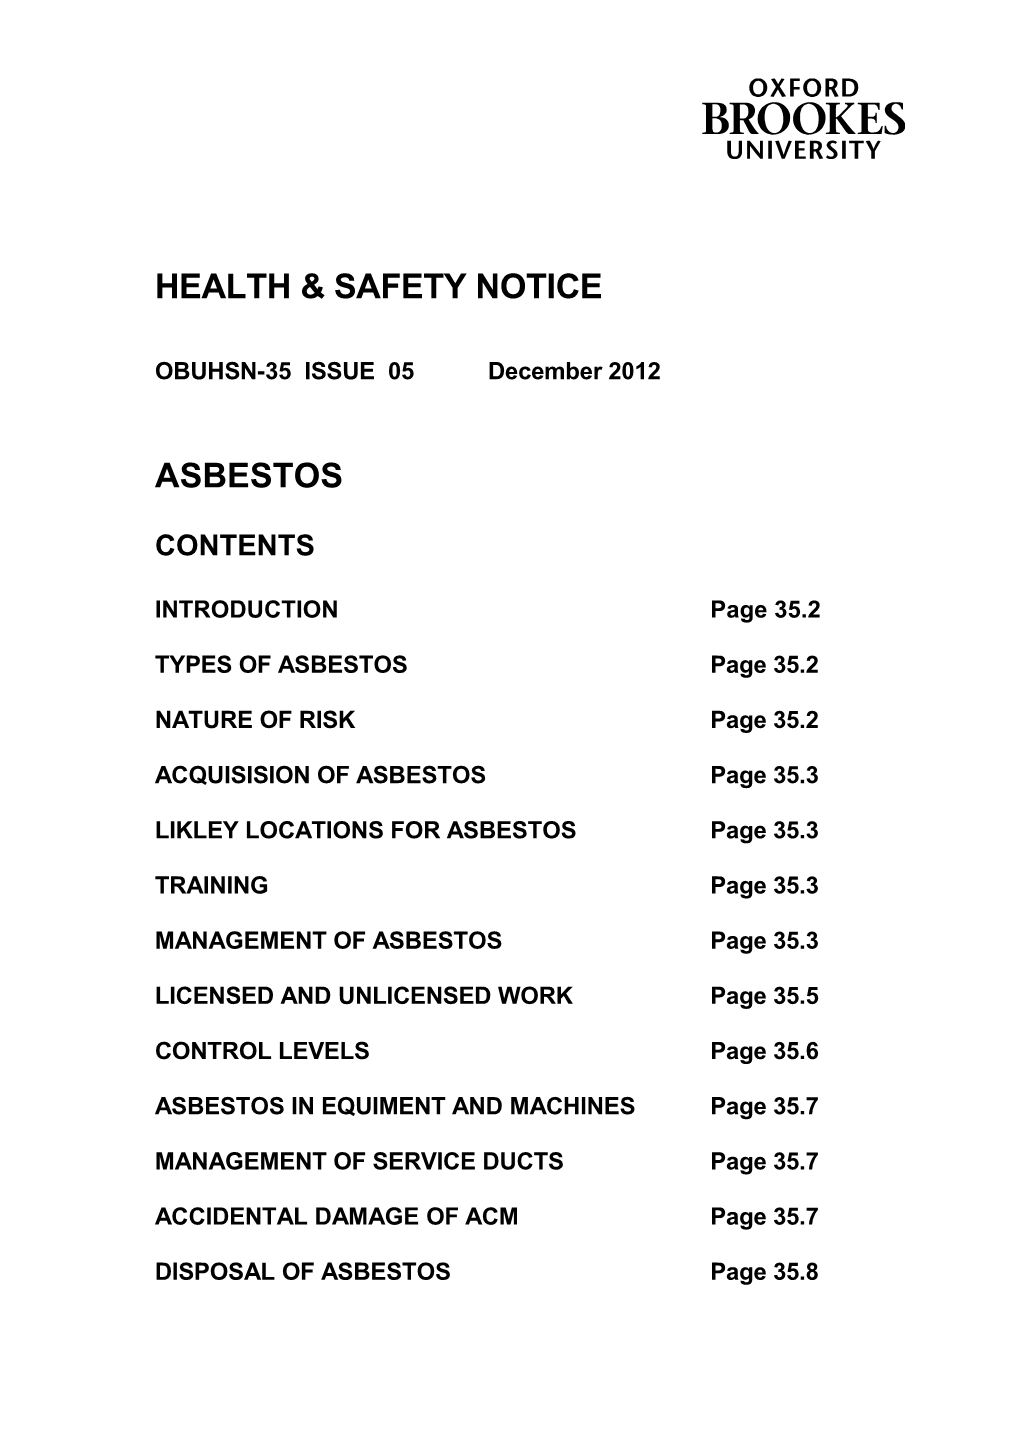 Health & Safety Notice